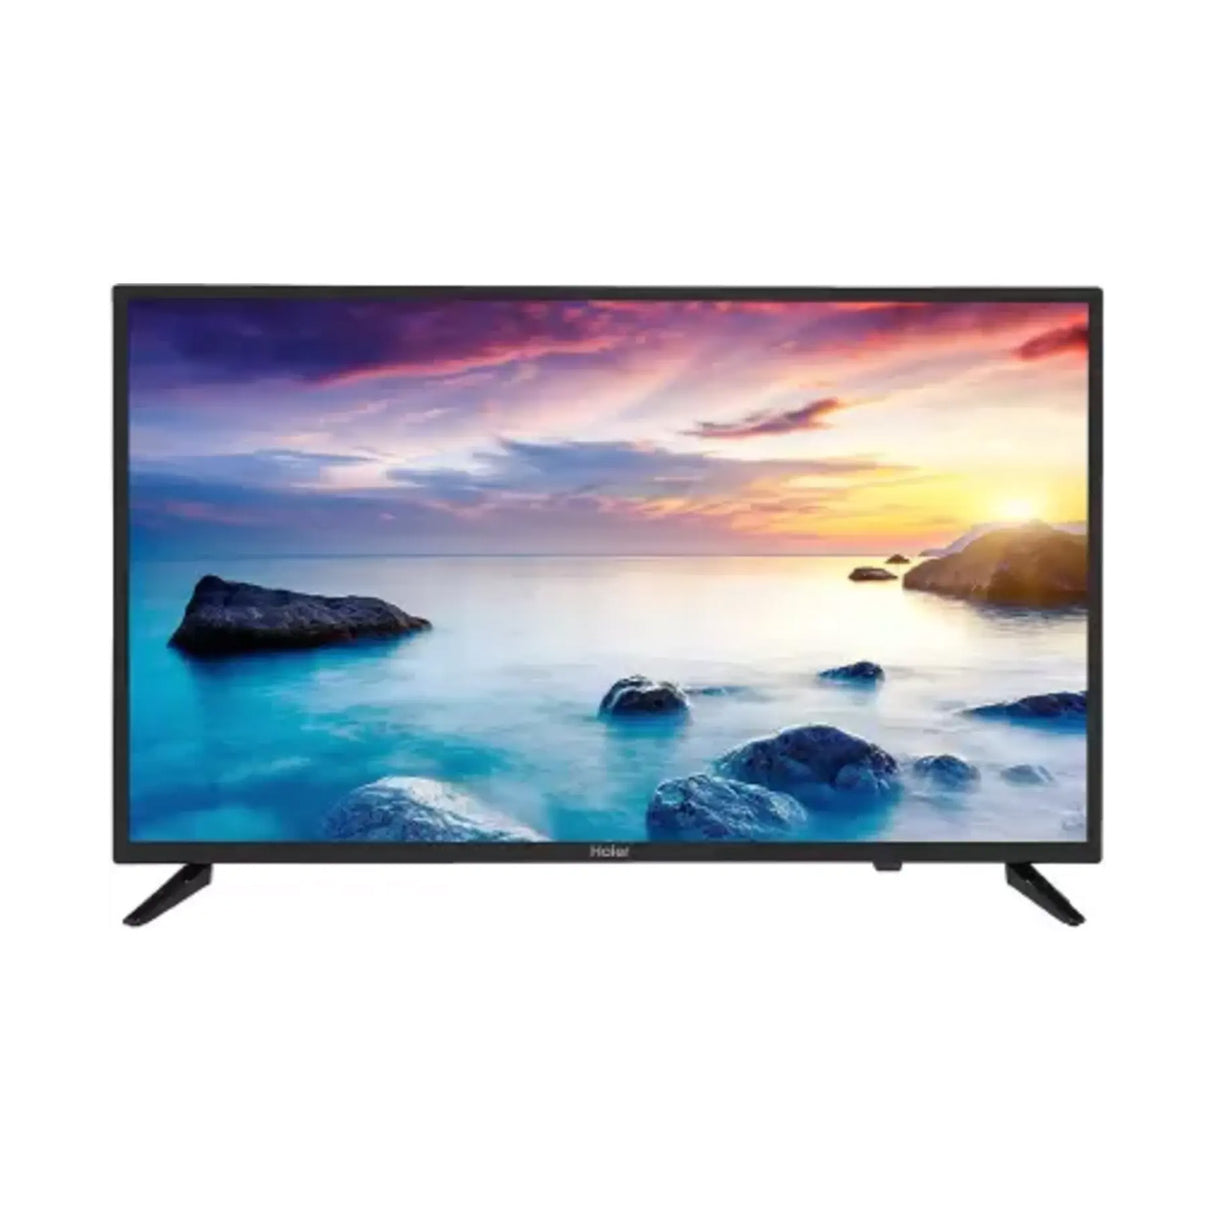 Haier 80 cm (32 inch) HD Ready LED Smart TV  LE32A7